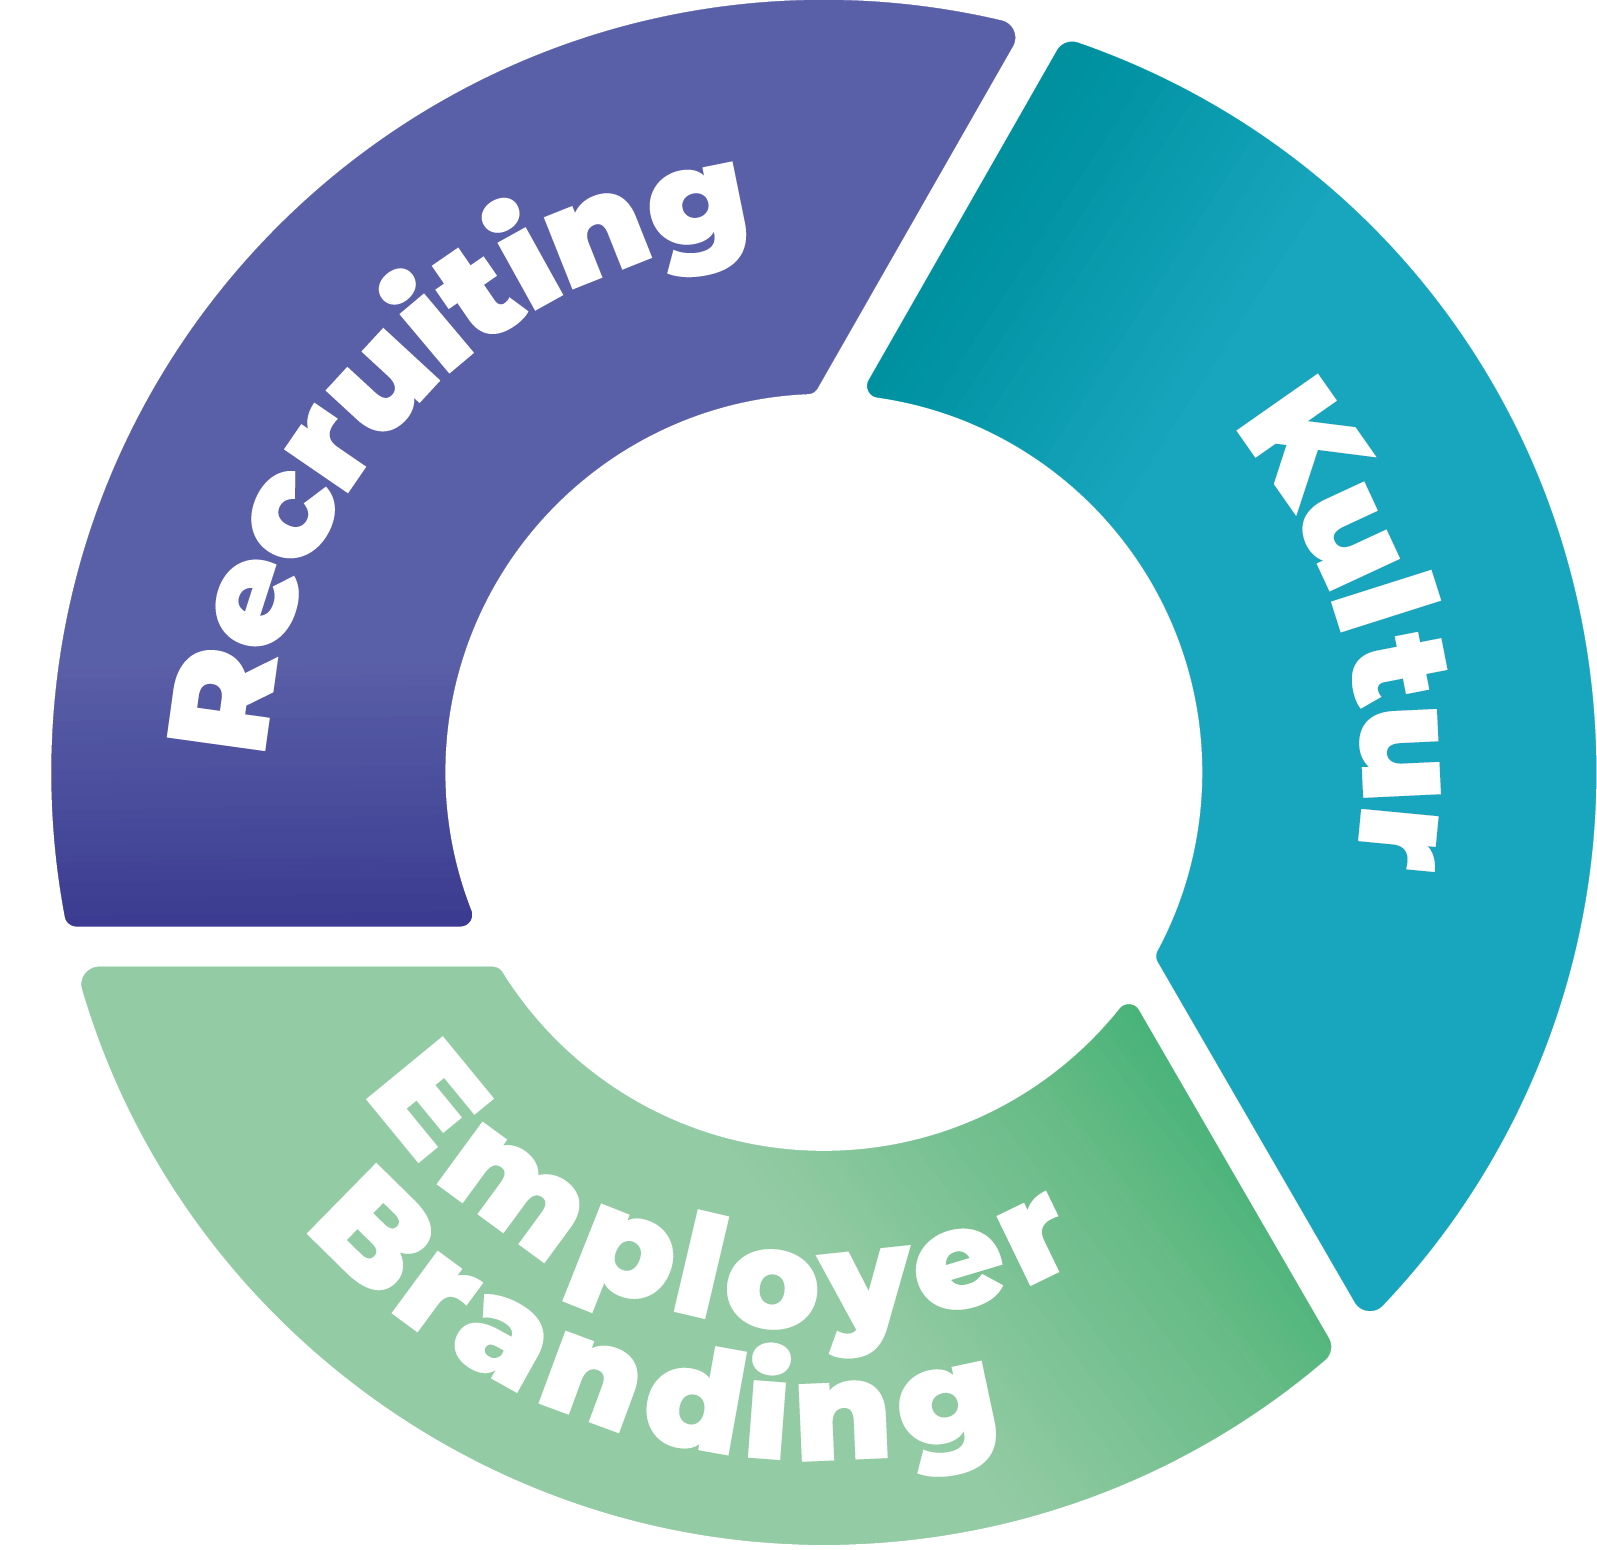 Zusammenspiel von Kultur, Employer Branding und Recruiting in einem Kreis abgebildet